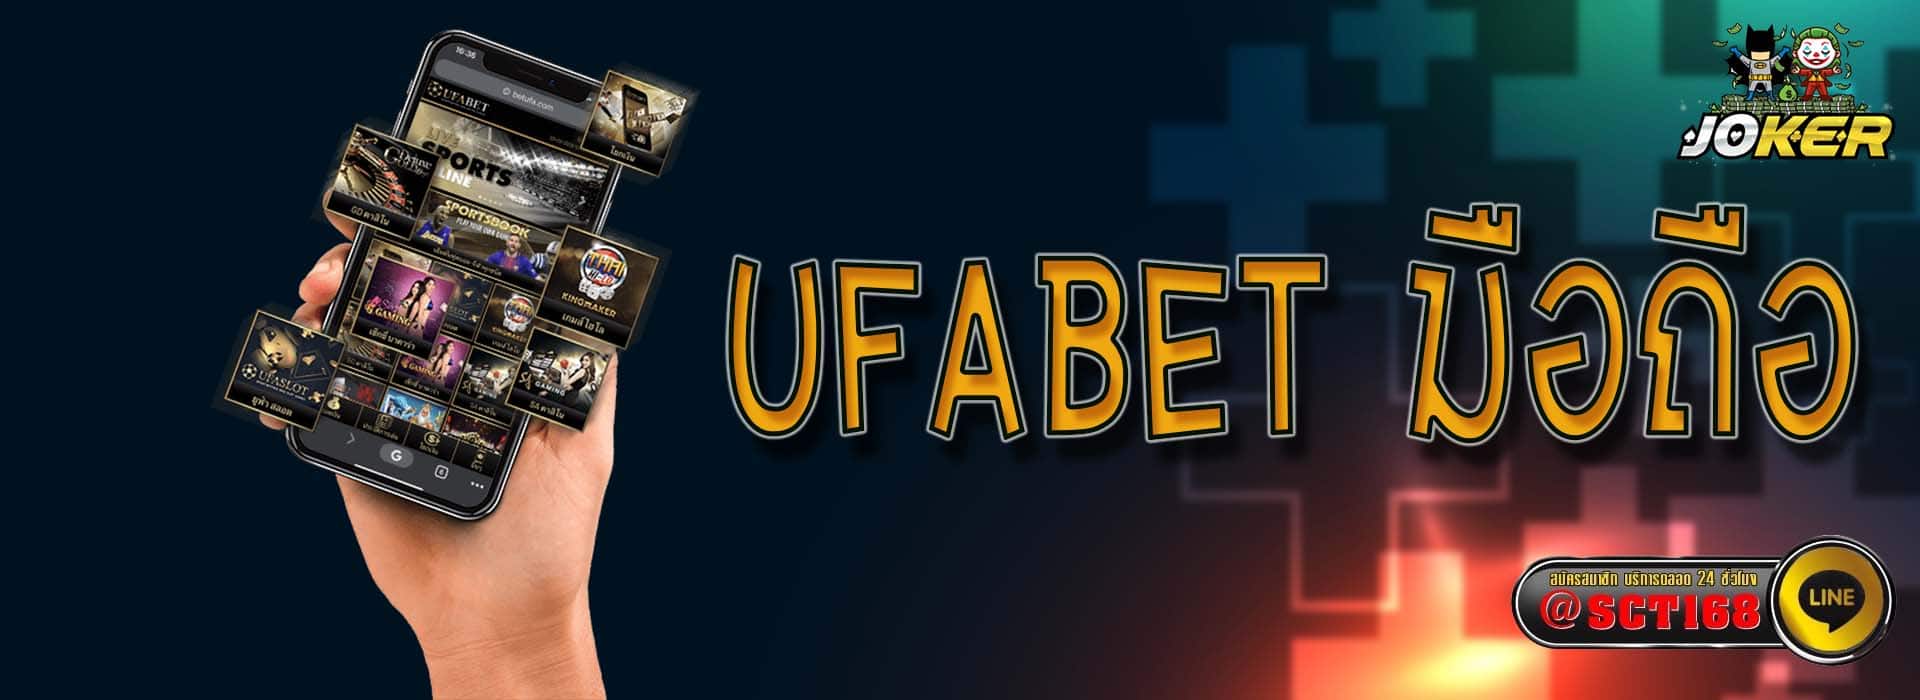 ufabet มือถือ ฝากถอน